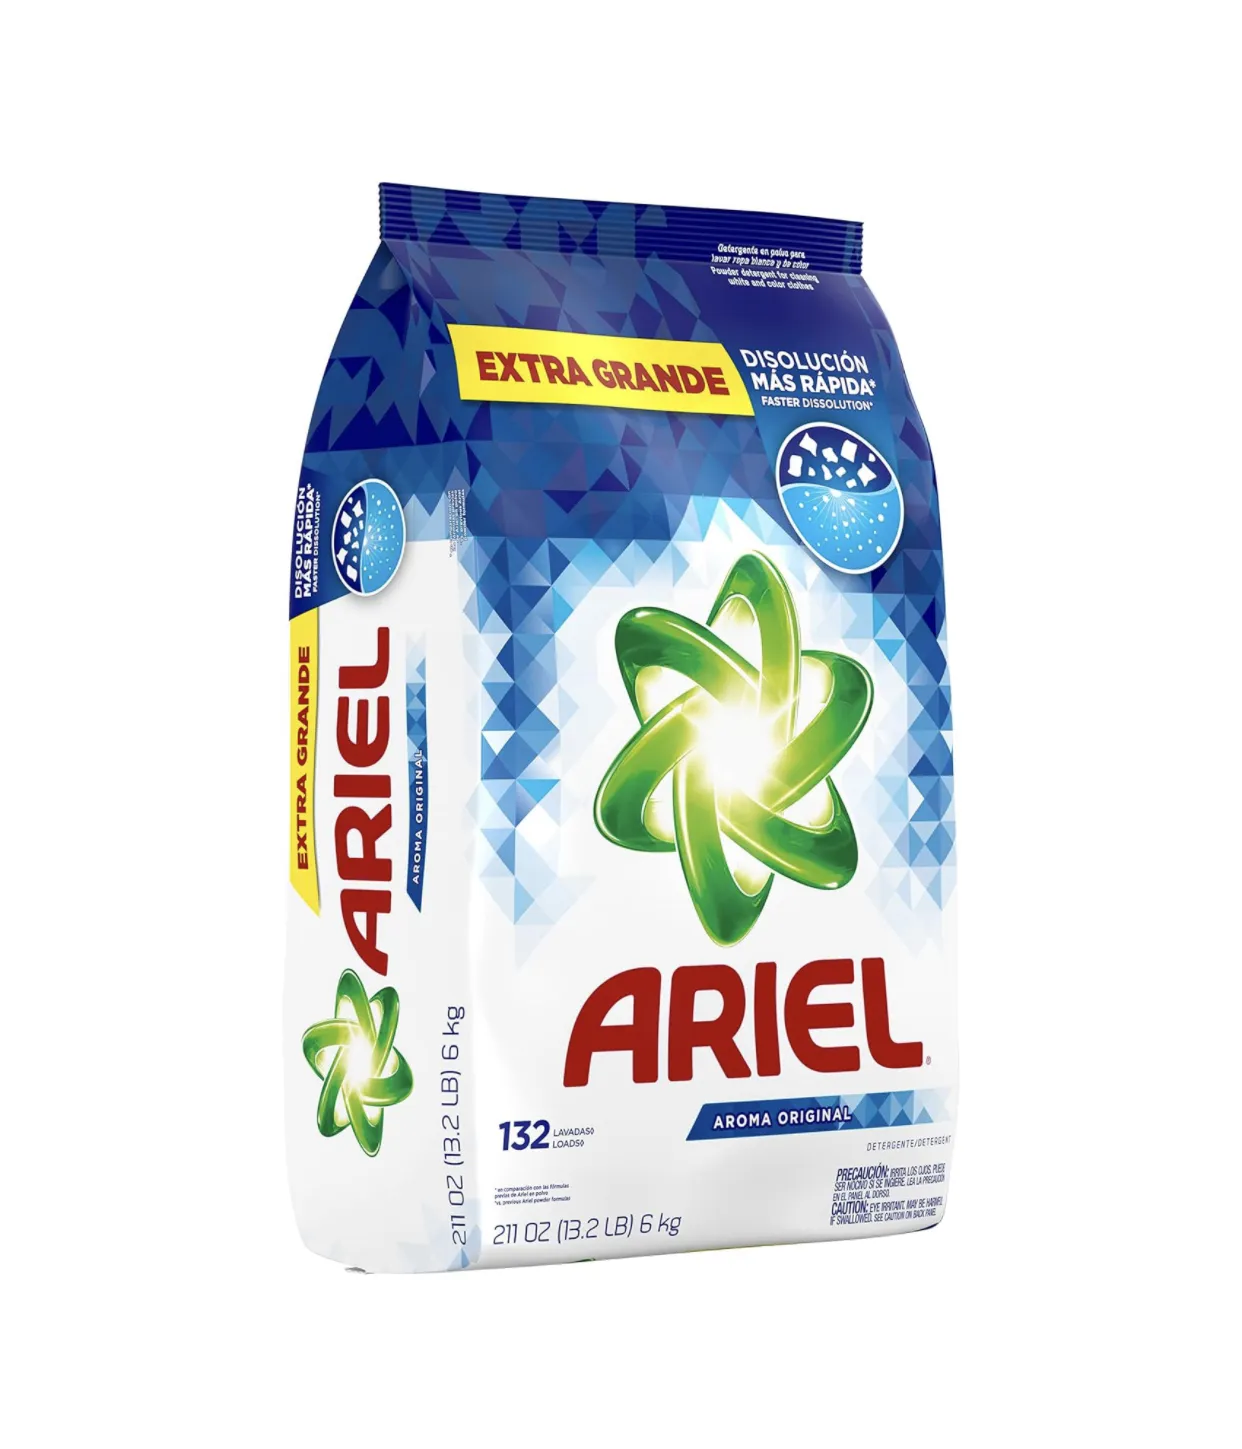 Premium Ariel Powder Laundry Detergent,Elite High Efficiency Original Scent, 211 ounces 132 Loads, 13.19 Pound 6kg(Pack of 1)